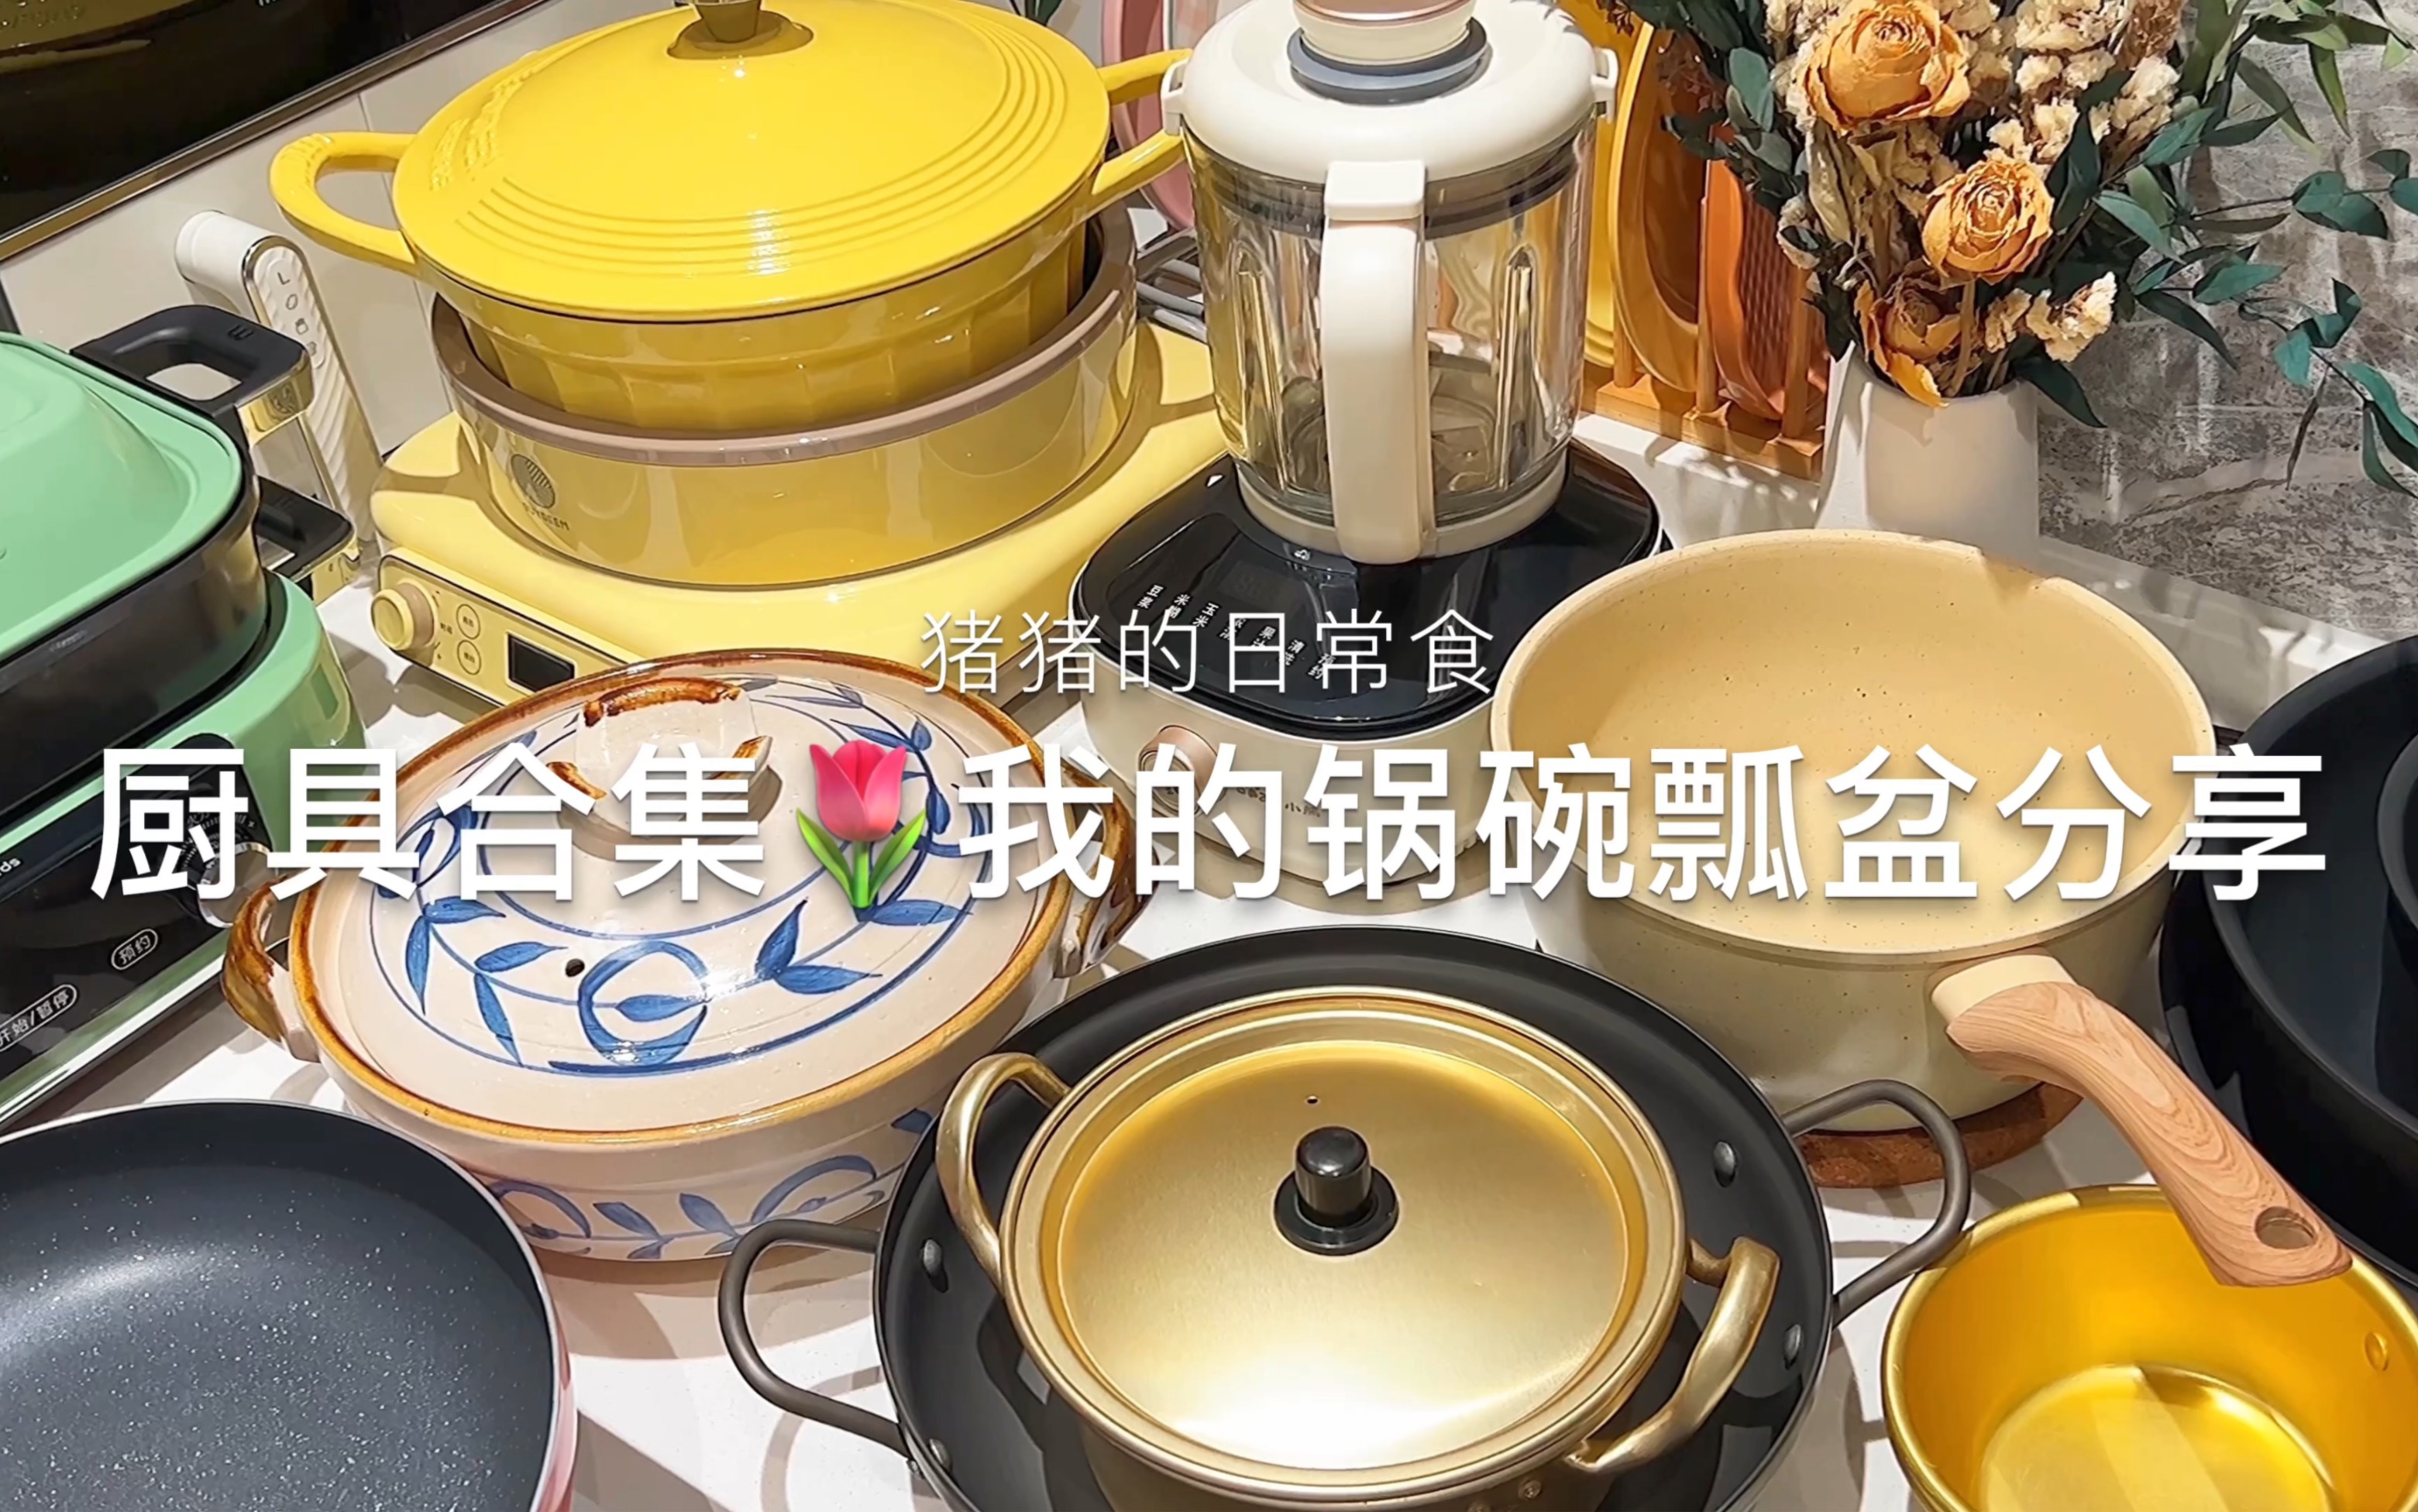 锅碗瓢盆图片素材-编号16160115-图行天下